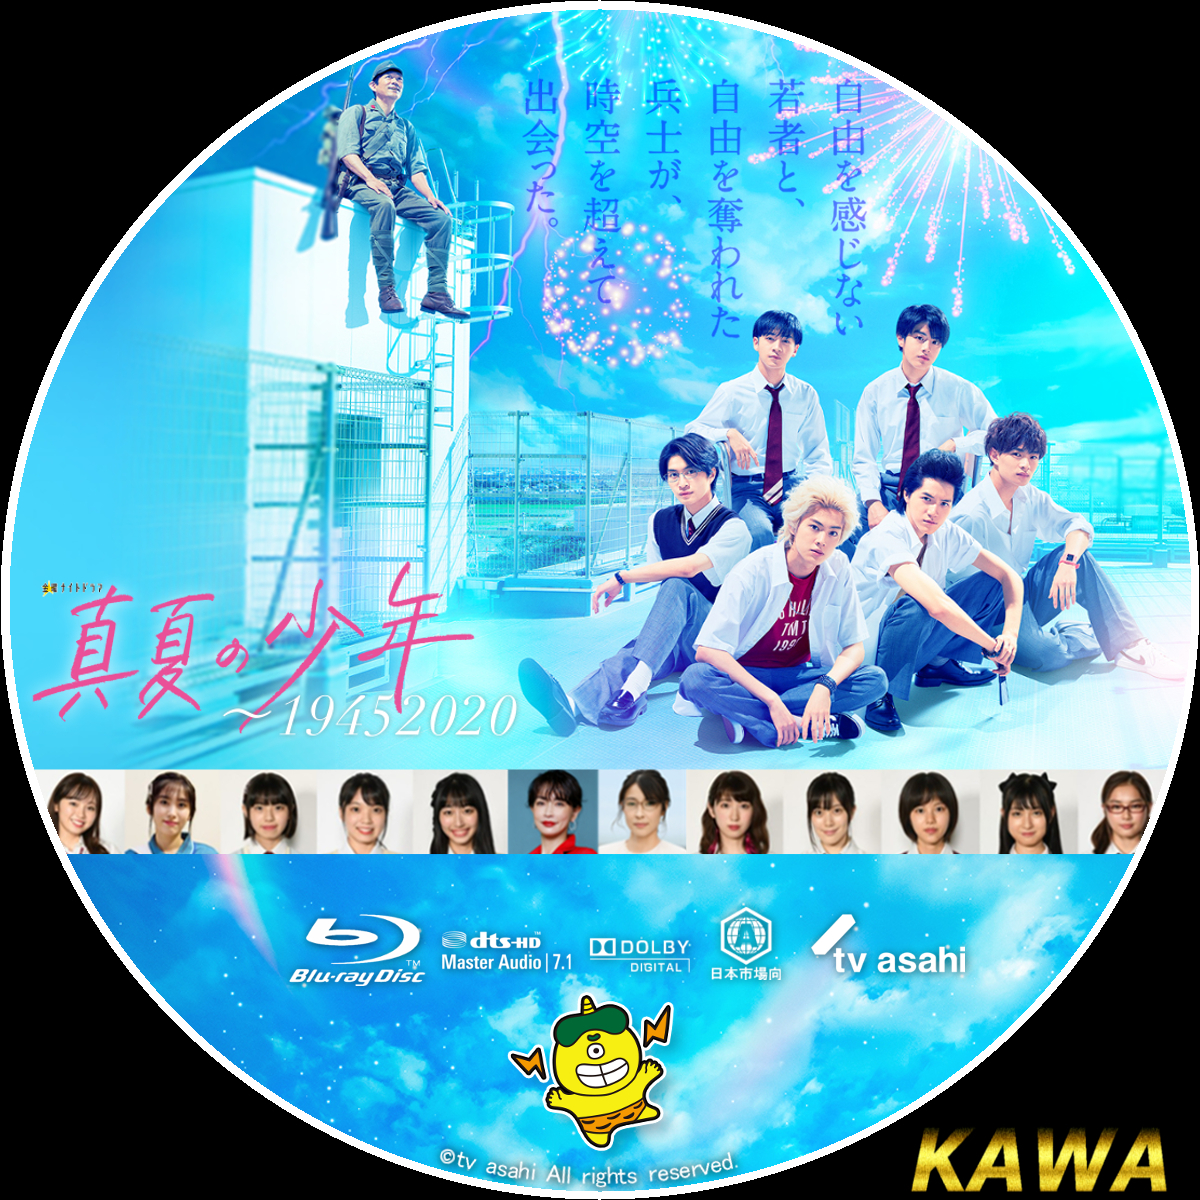 日本製 2ウェイ 真夏の少年～19452020 Blu-ray BOX〈5枚組〉 美少年